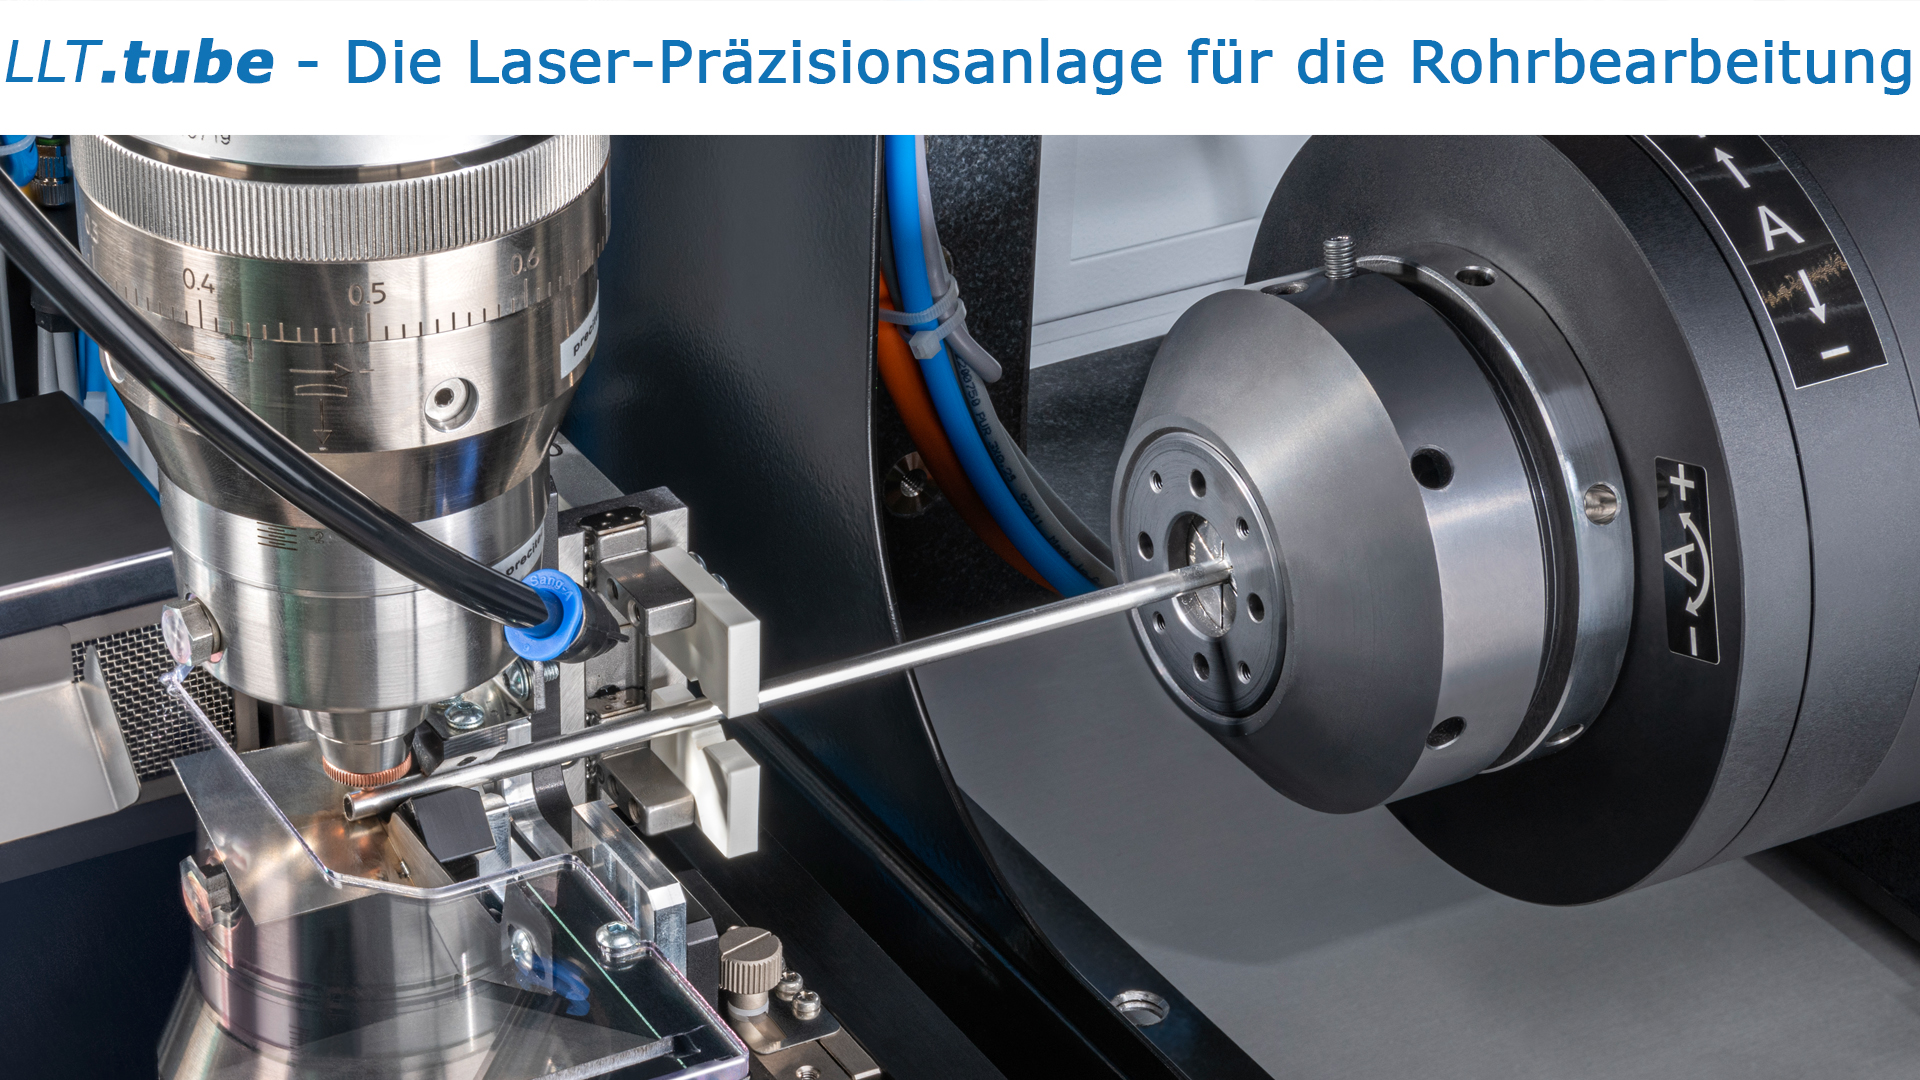 𝘓𝘓𝘛.𝙩𝙪𝙗𝙚 - Die Laser-Präzisionsanlage für die Rohrbearbeitung